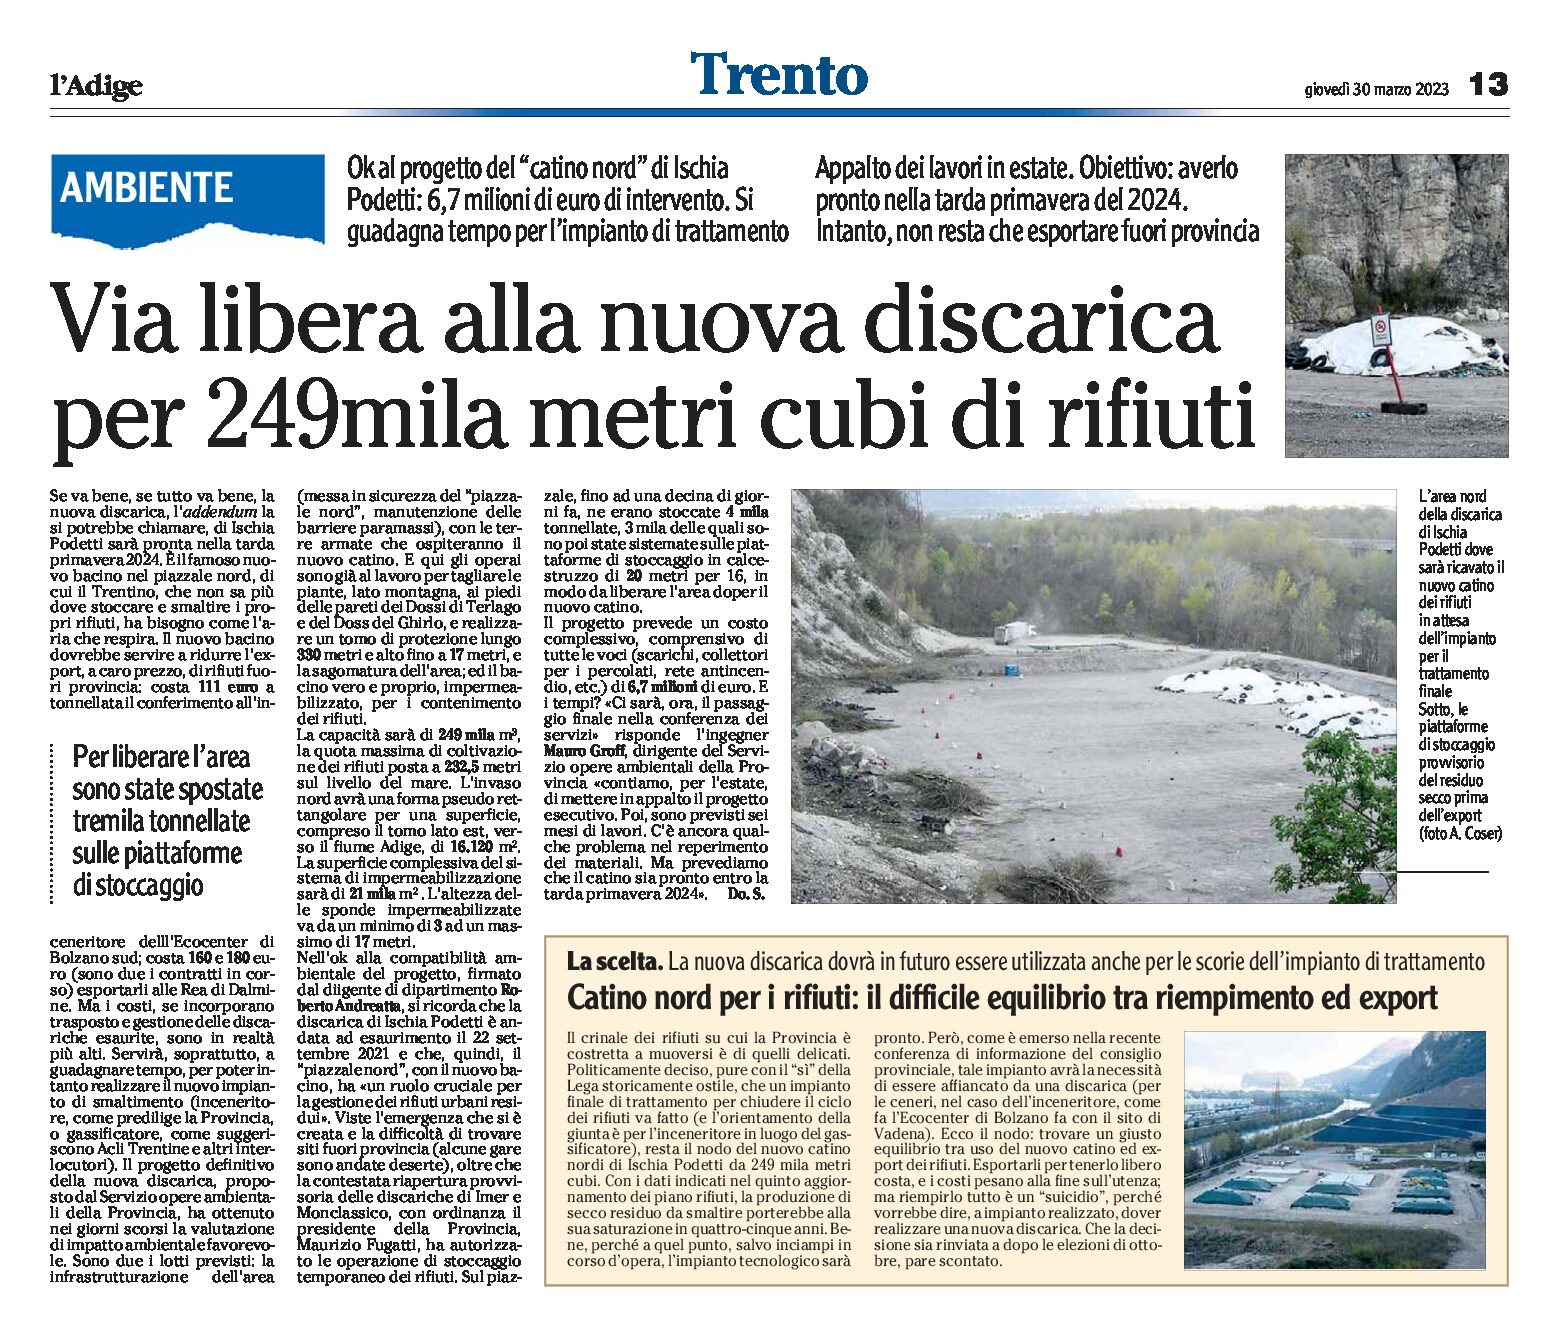 Trentino, rifiuti: via libera alla nuova discarica, area nord di Ischia Podetti